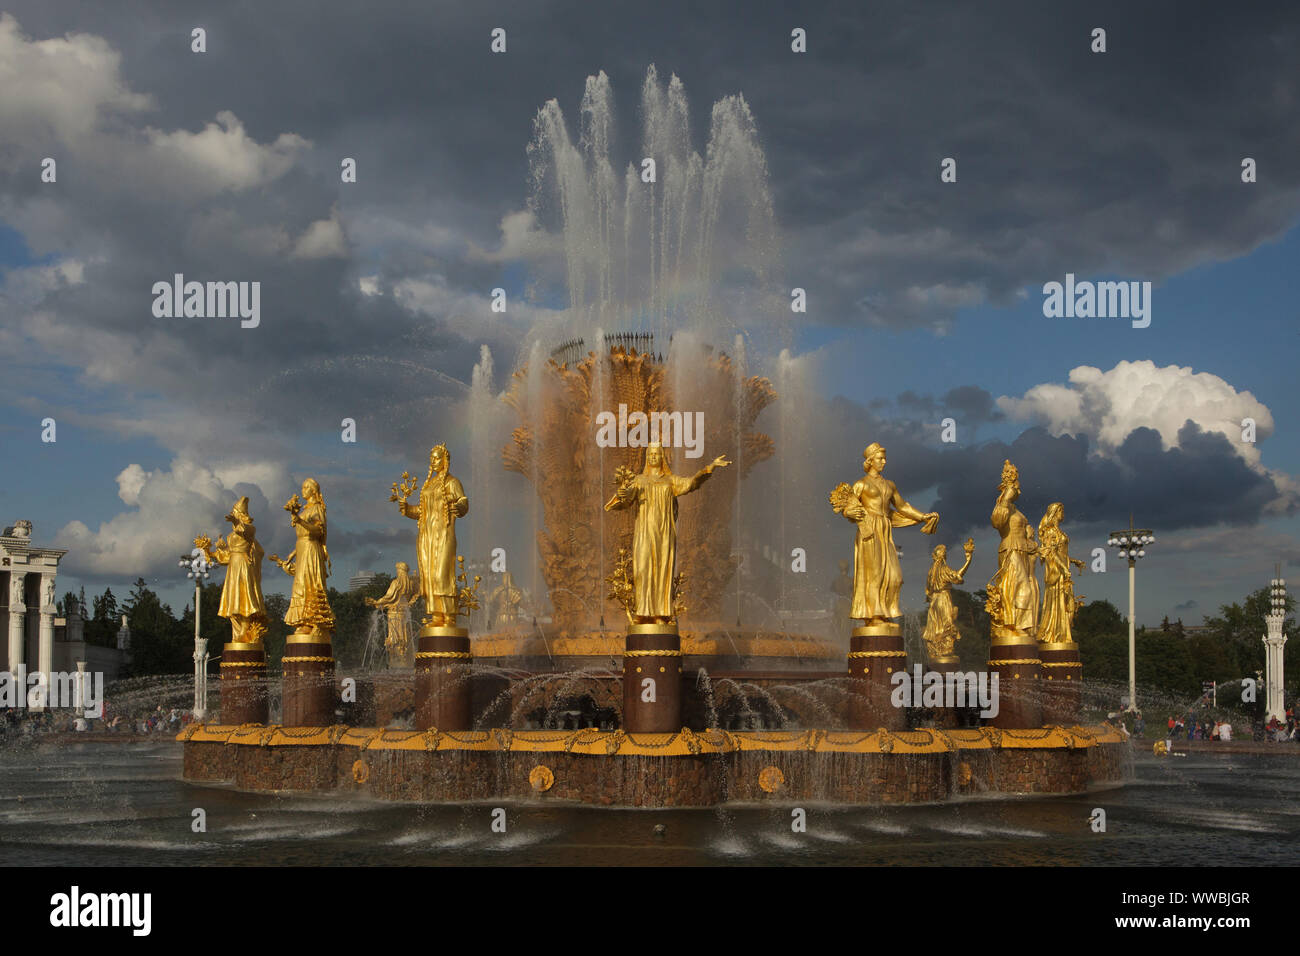 L'amicizia delle nazioni (l'amicizia dei popoli) la fontana della piazza principale del VDNH fiera (mostra di conquiste dell economia nazionale) a Mosca, in Russia. La fontana progettata da architetto sovietico Konstantin Topuridze decorate con sedici statue dorate delle nazioni della Unione Sovietica da scultori sovietica Zinaida Bazehenova, Alexey Teneta, Iosif Chaykov, Zoya Ryleyeva e altri è stato costruito nel 1954. La fontana è anche conosciuta come la Golden covone. Foto Stock